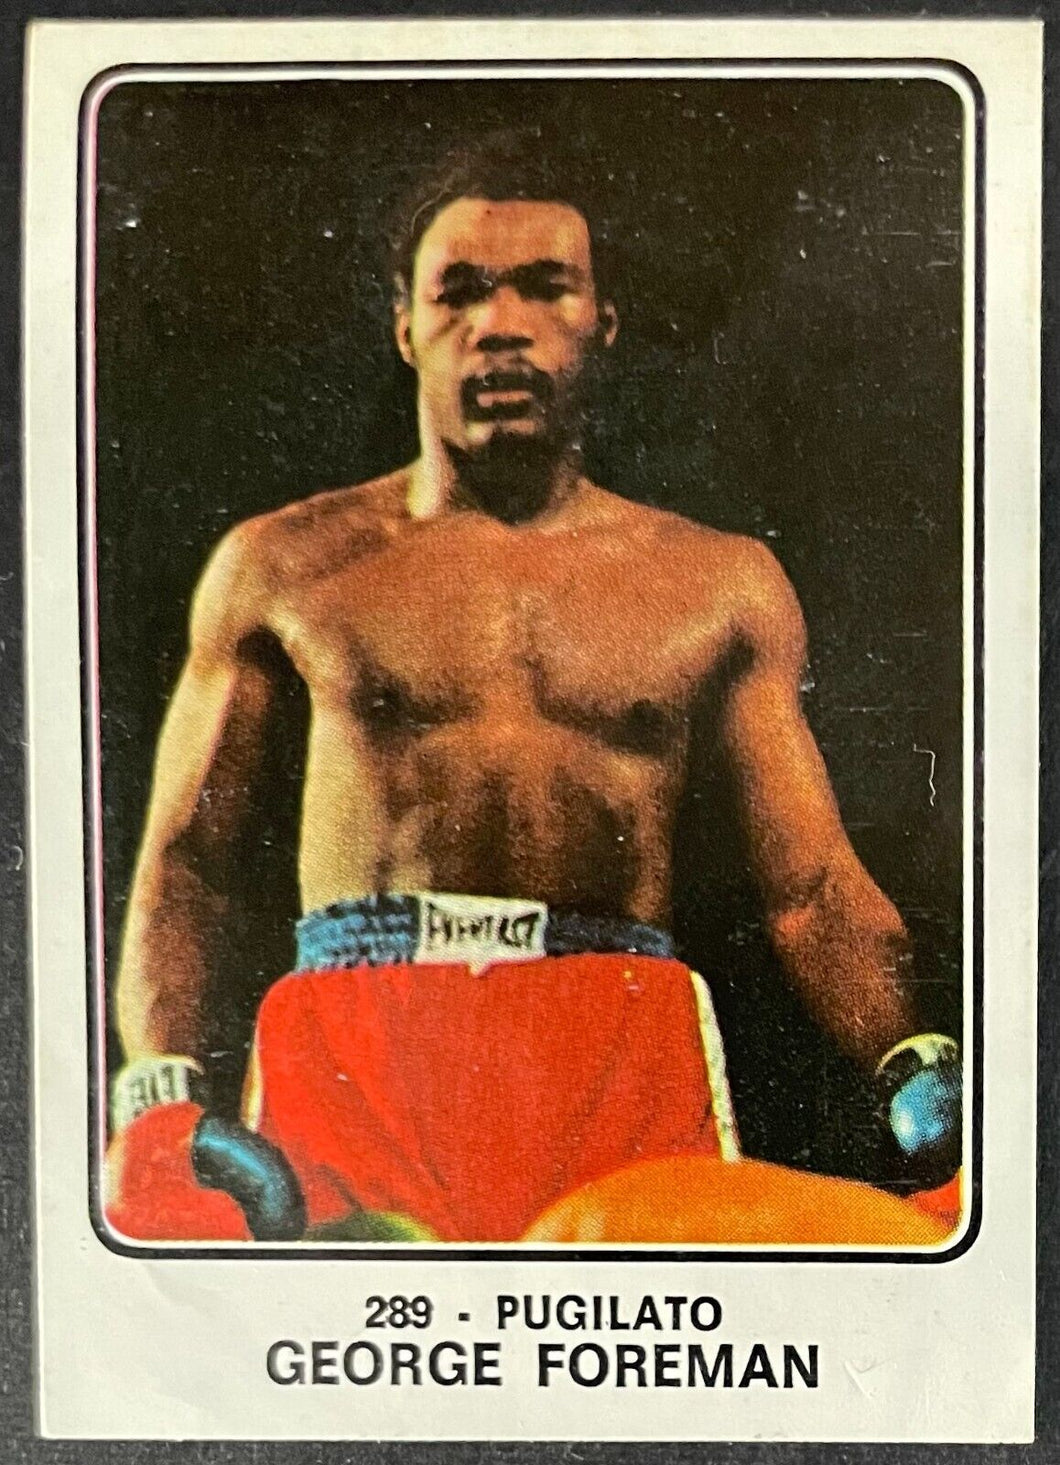 1973 George Foreman Panini Campioni Dello Sport Boxing Rookie Card #289 Boxer